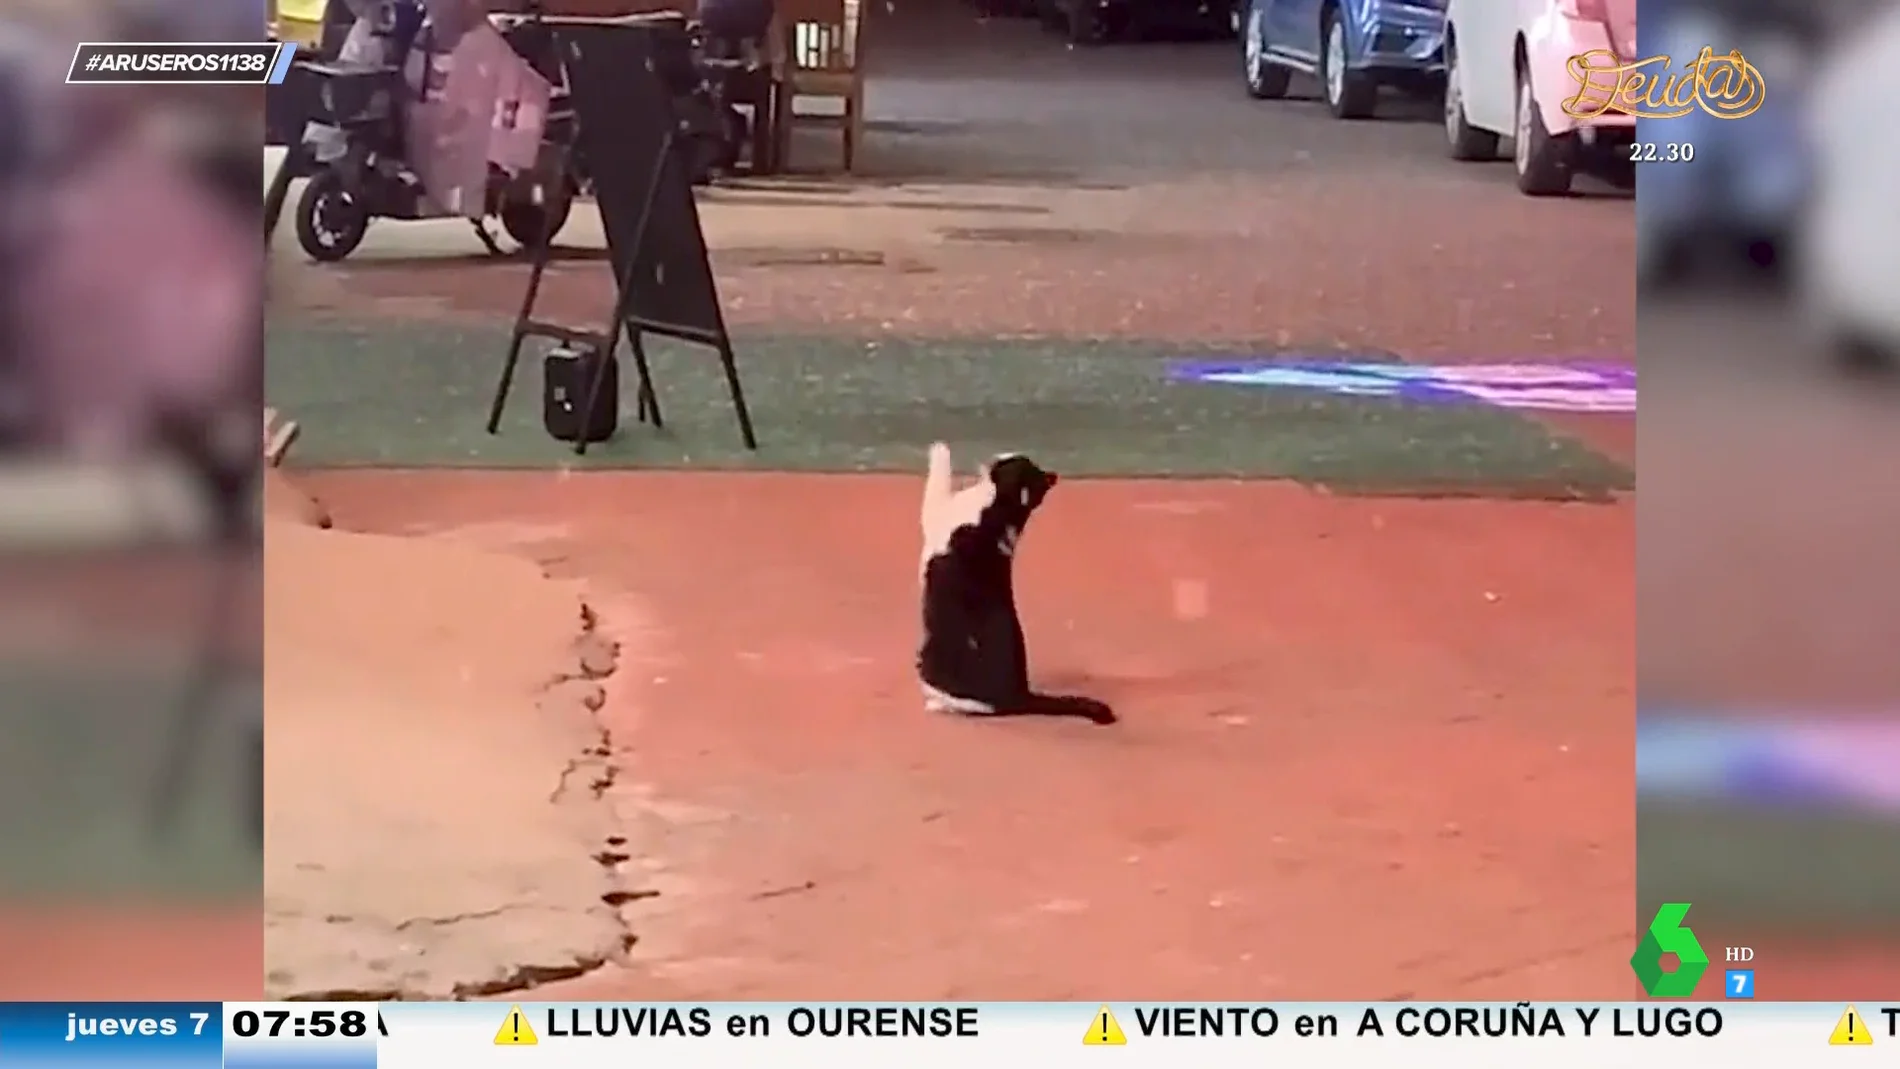 El divertido vídeo viral del gato que intenta atrapar copos de nieve: "El nuevo deporte gatuno"